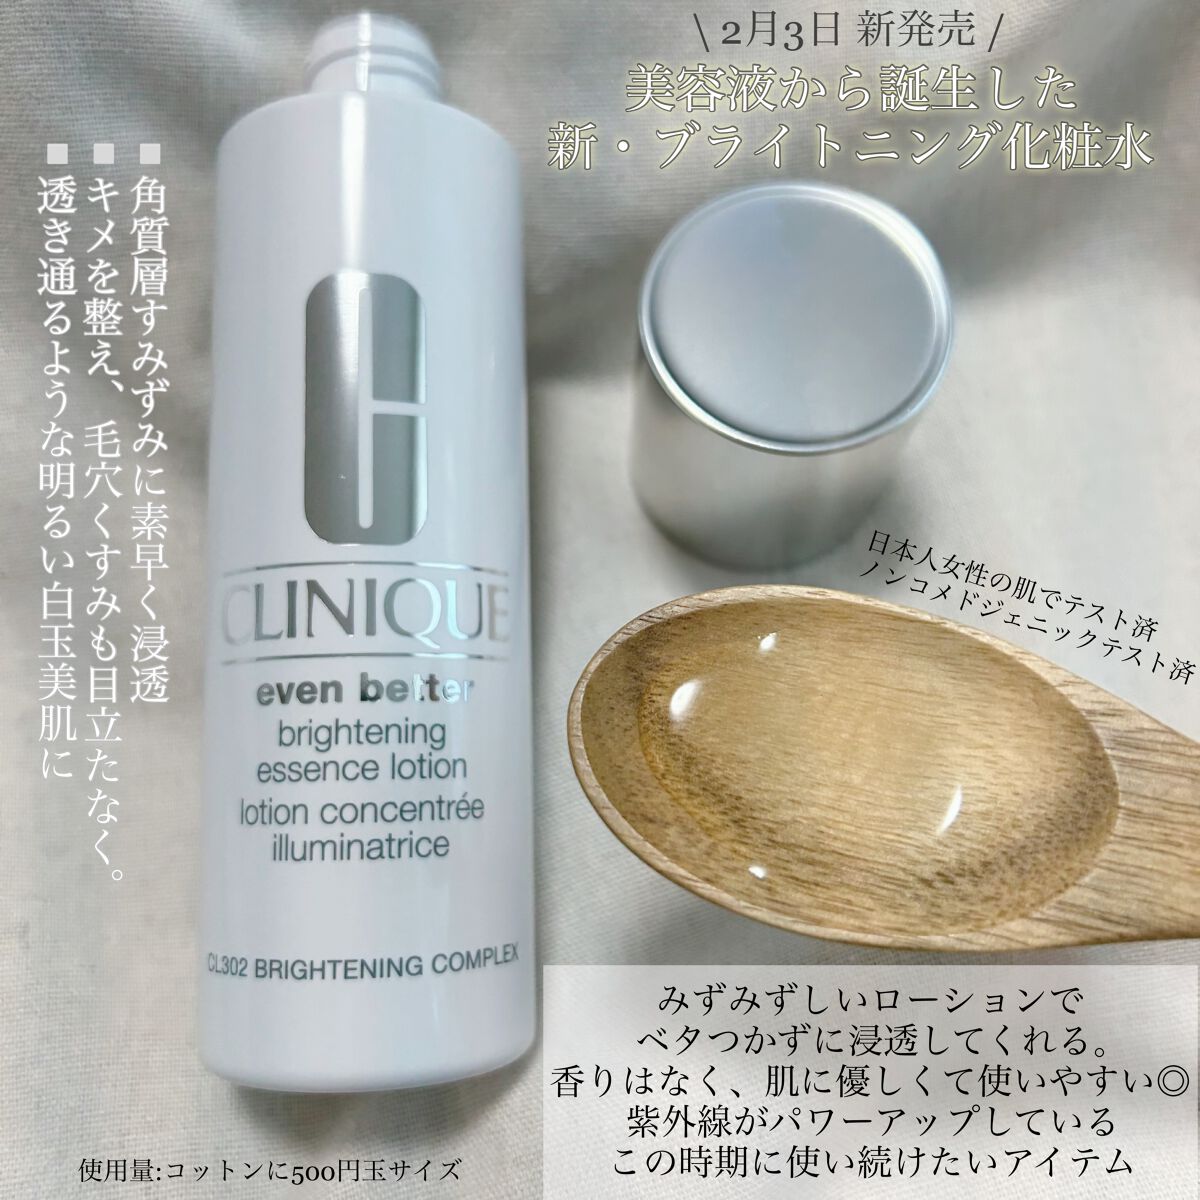 CLINIQUEのスキンケア・基礎化粧品 イーブン ベター ブライター